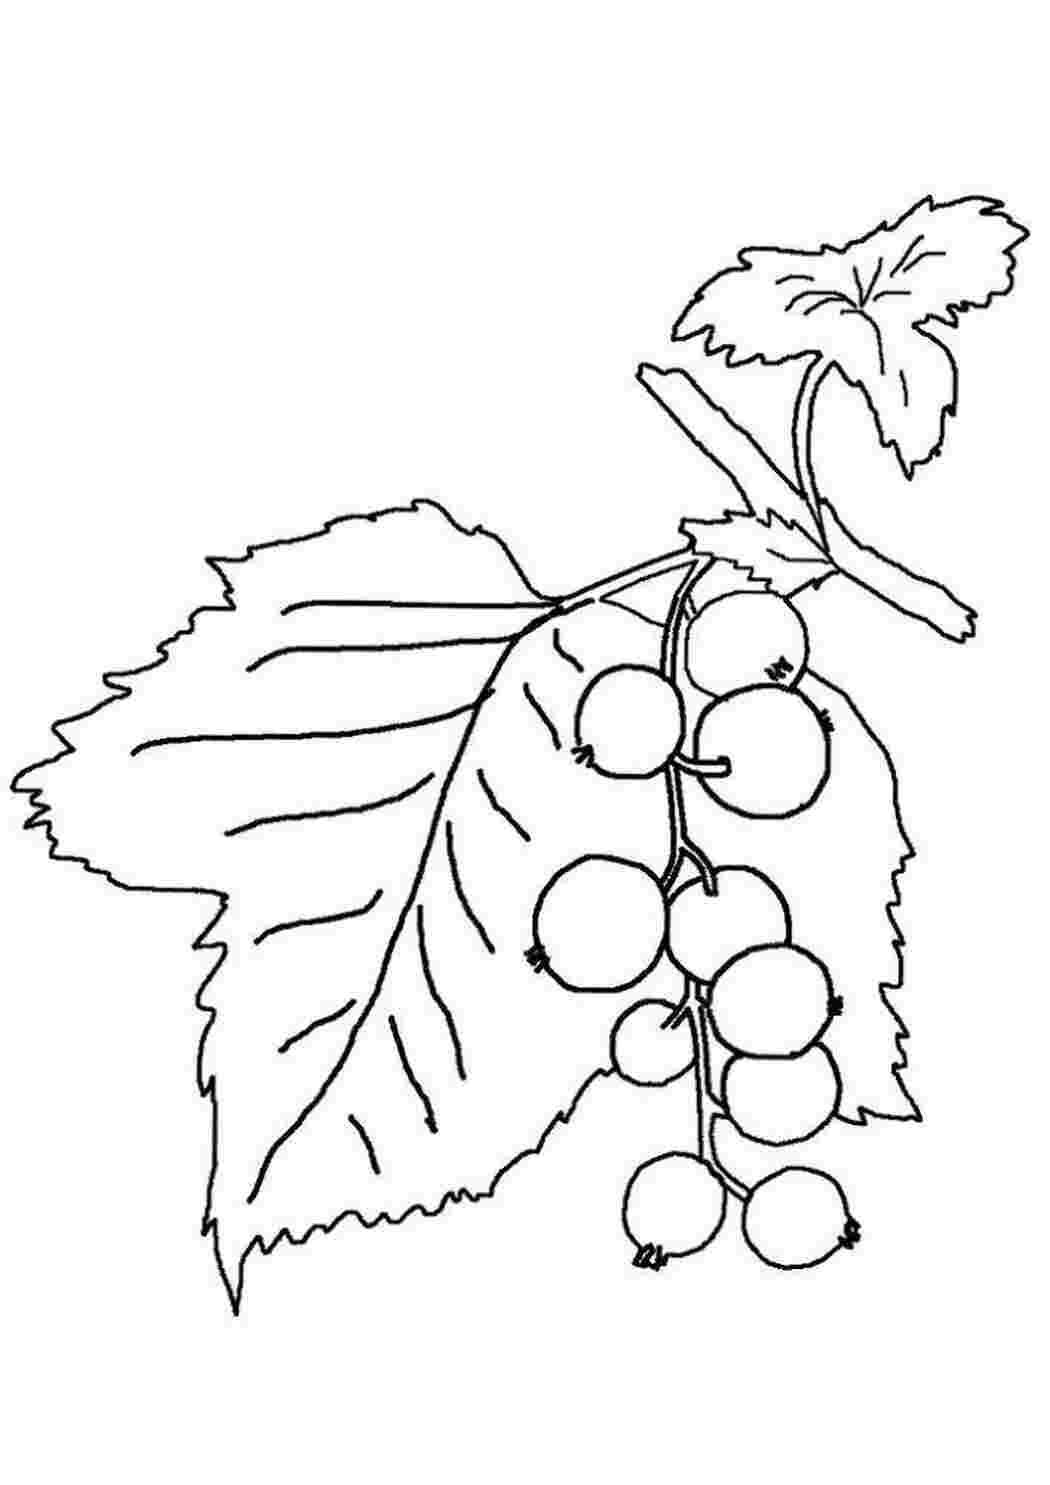 Раскраски Раскраски ягоды малина вишня арбуз вишня крыжовник  Смородина